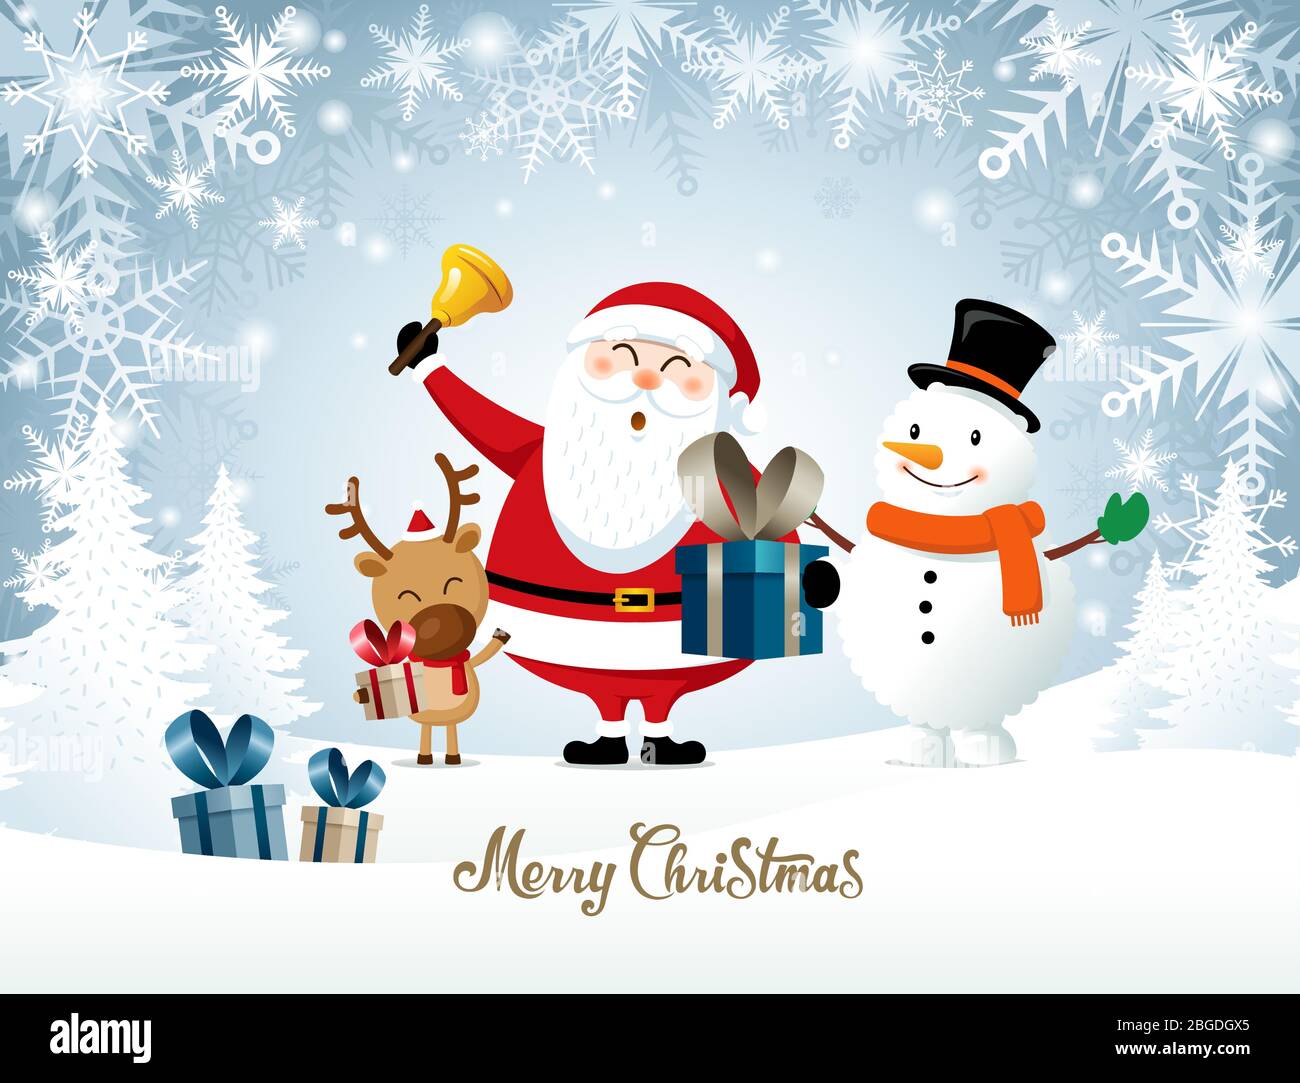 Frohe Weihnachten, Frohe Weihnachten Freunde. Weihnachtsmann, Schneemann, Rudolph, Geschenke, weißer Schnee Hintergrund. Stock Vektor